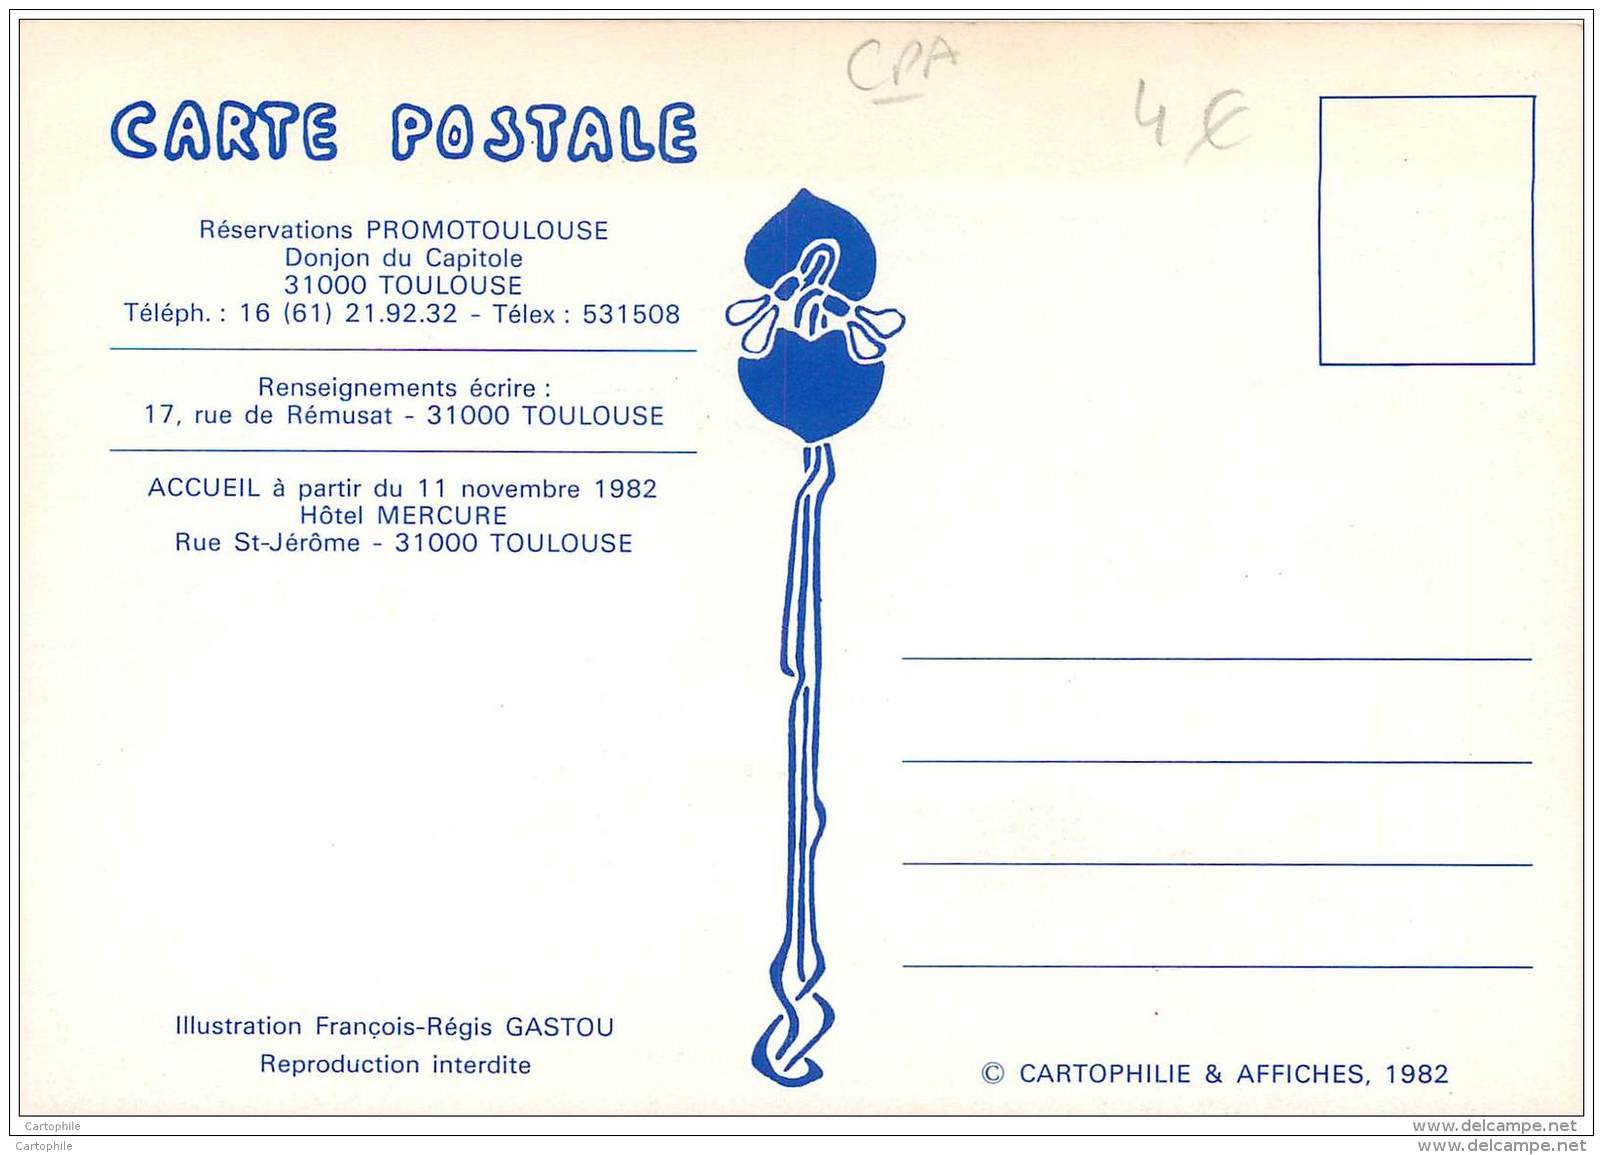 1er Congres National De La Cartophilie Et Affiches A Toulouse Novembre 1982 - Salon Carte Postale - Borse E Saloni Del Collezionismo